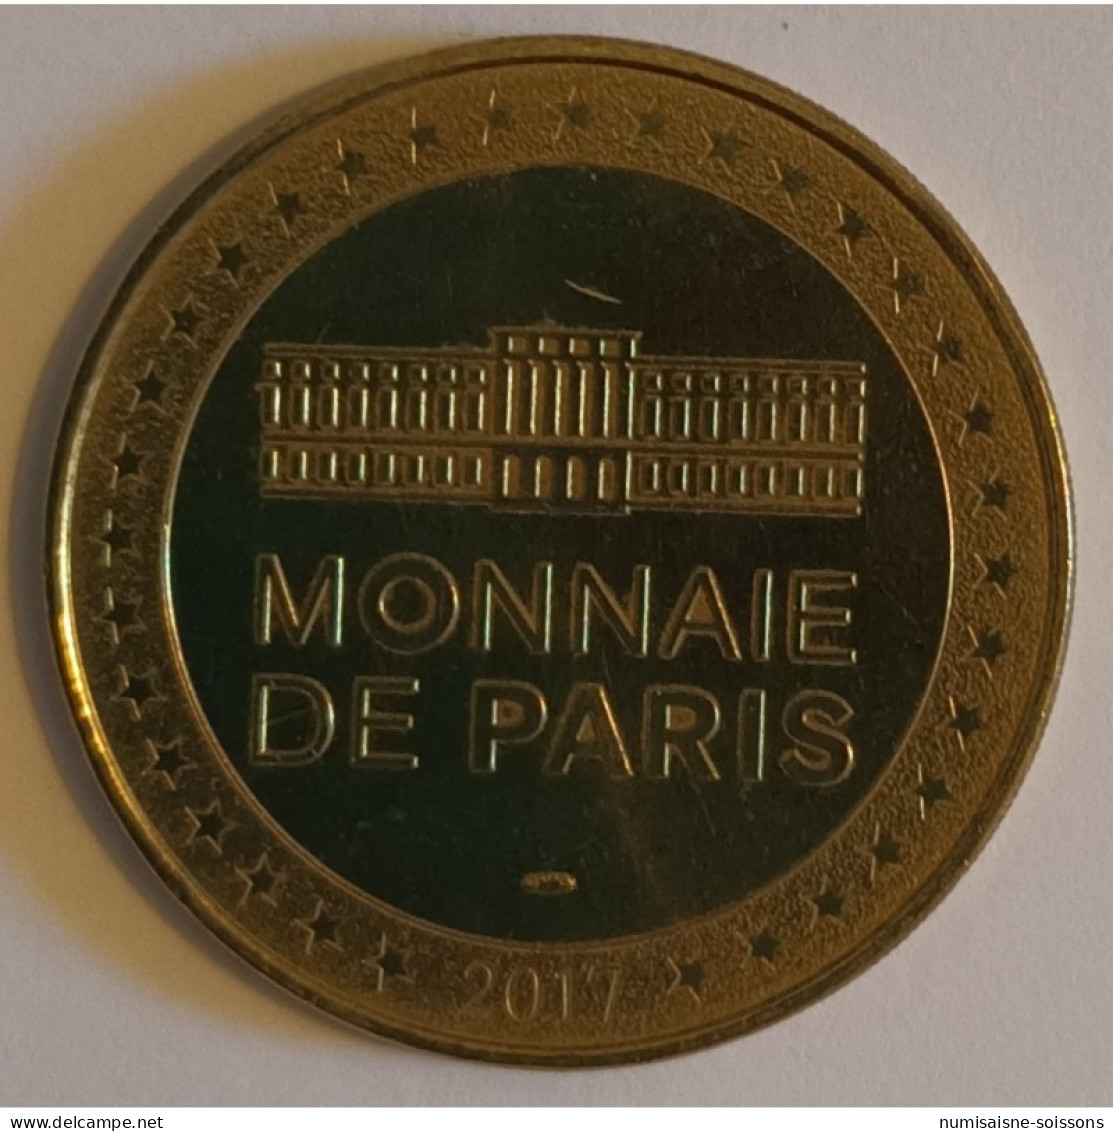 30 - UZES - HARIBO - HAPPY COLA - Monnaie De Paris - 2017 - Ohne Datum